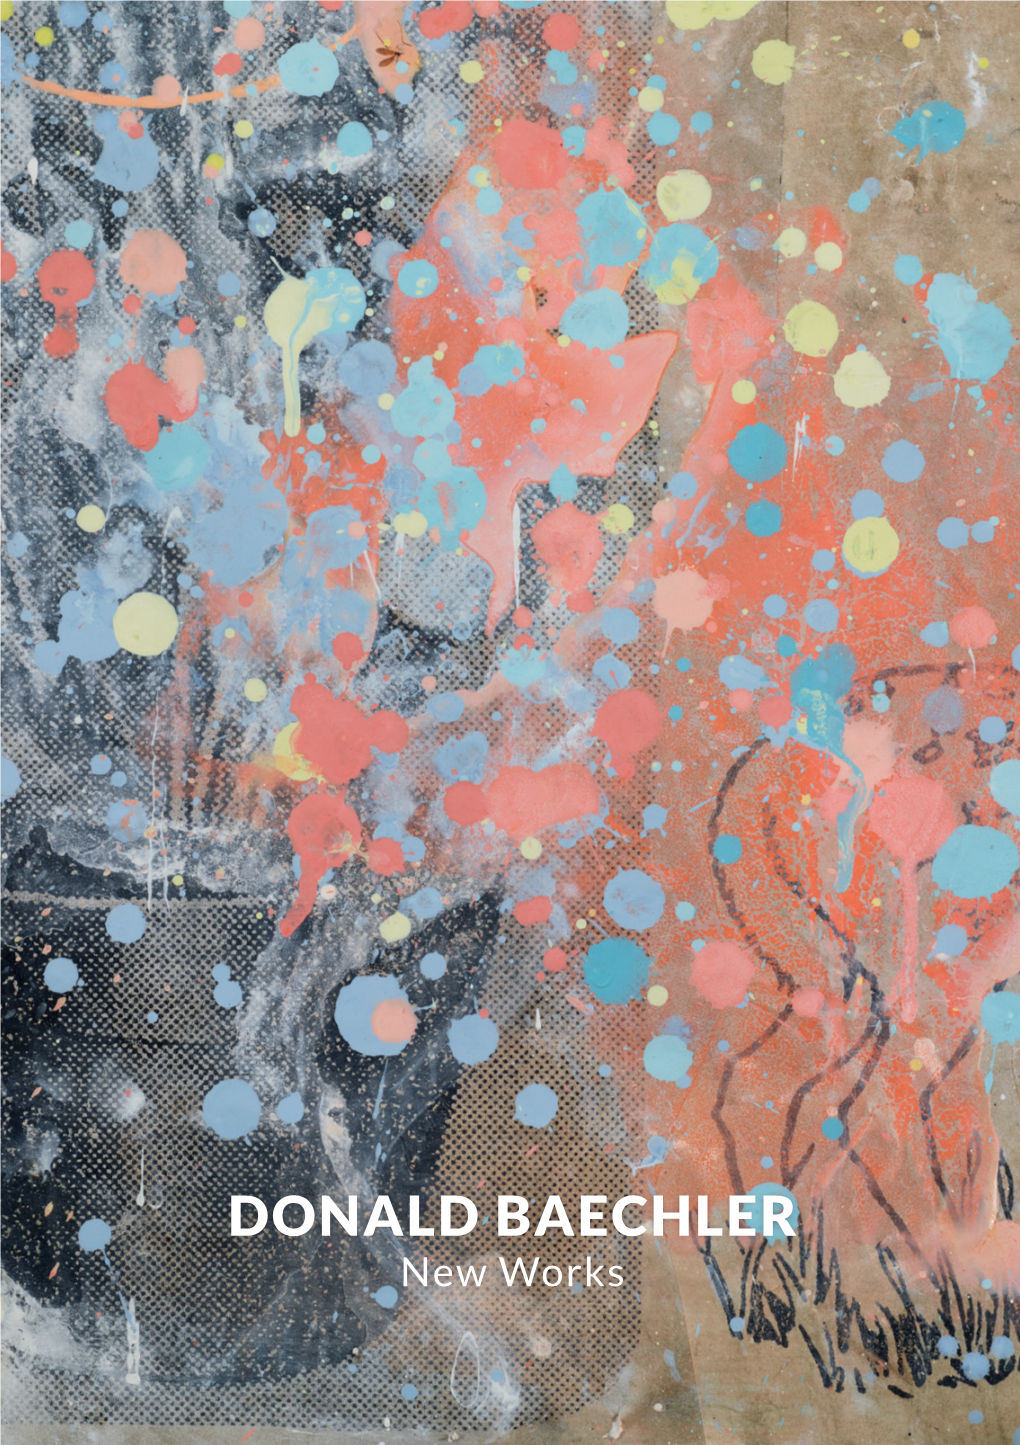 DONALD BAECHLER New Works